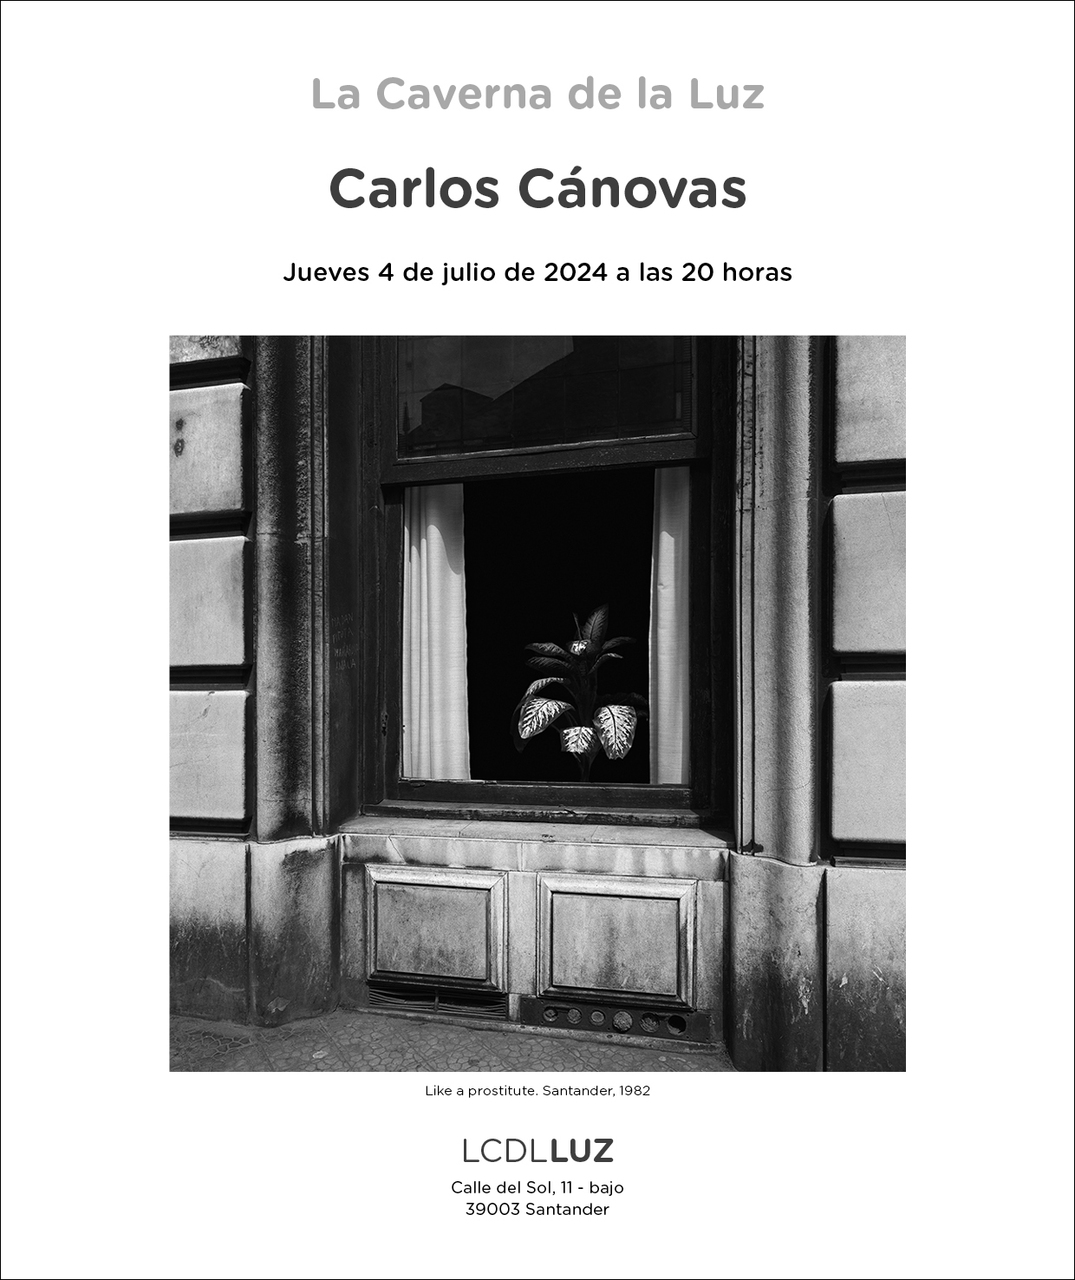 "Like a prostitute", de Carlos Cánovas, en La Caverna de la Luz